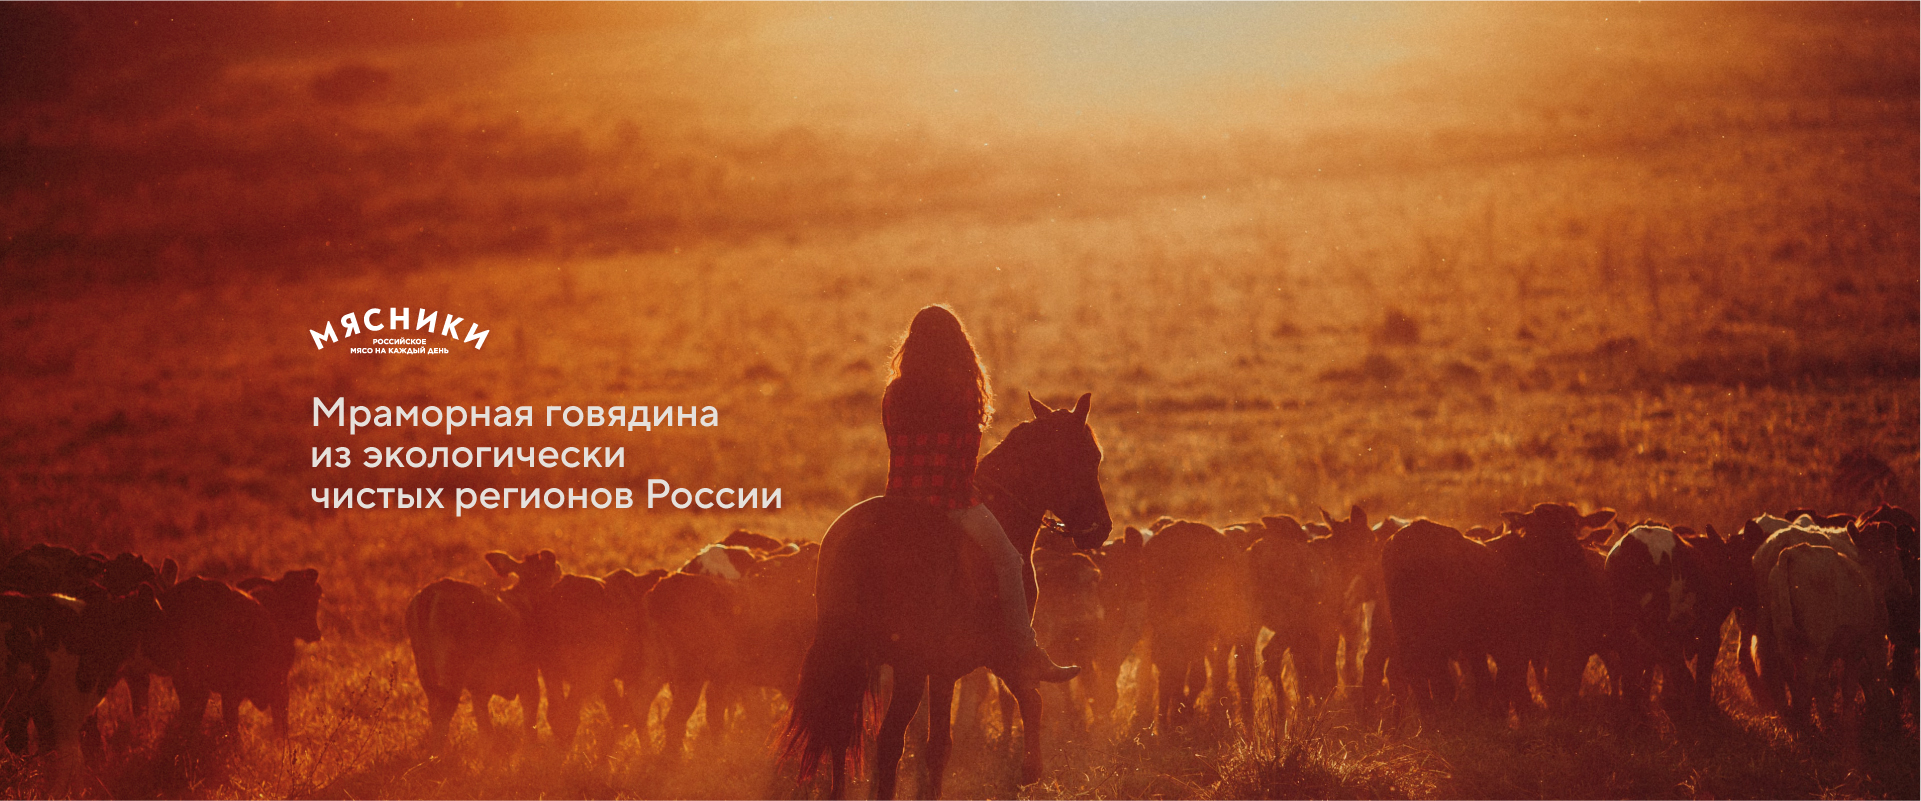 Мраморная говядина из экологически чистых регионов россии